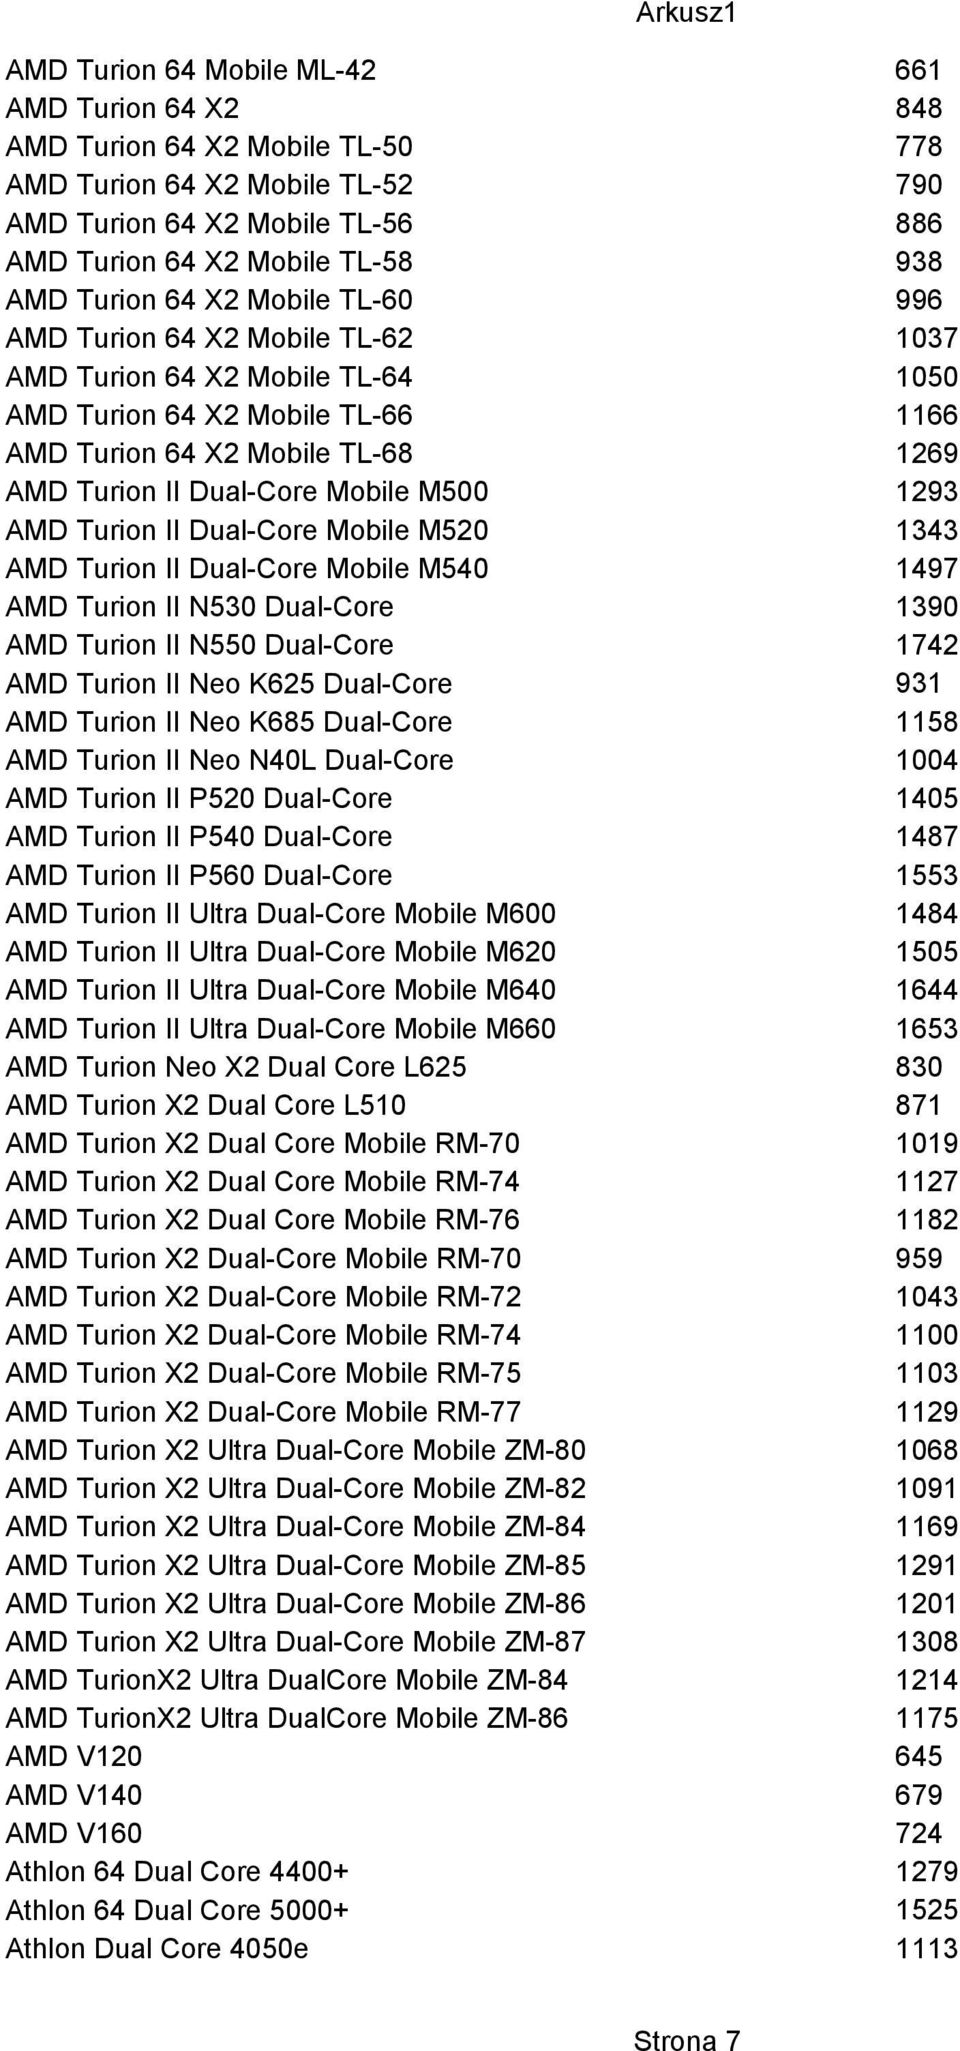 1293 AMD Turion II Dual-Core Mobile M520 1343 AMD Turion II Dual-Core Mobile M540 1497 AMD Turion II N530 Dual-Core 1390 AMD Turion II N550 Dual-Core 1742 AMD Turion II Neo K625 Dual-Core AMD Turion